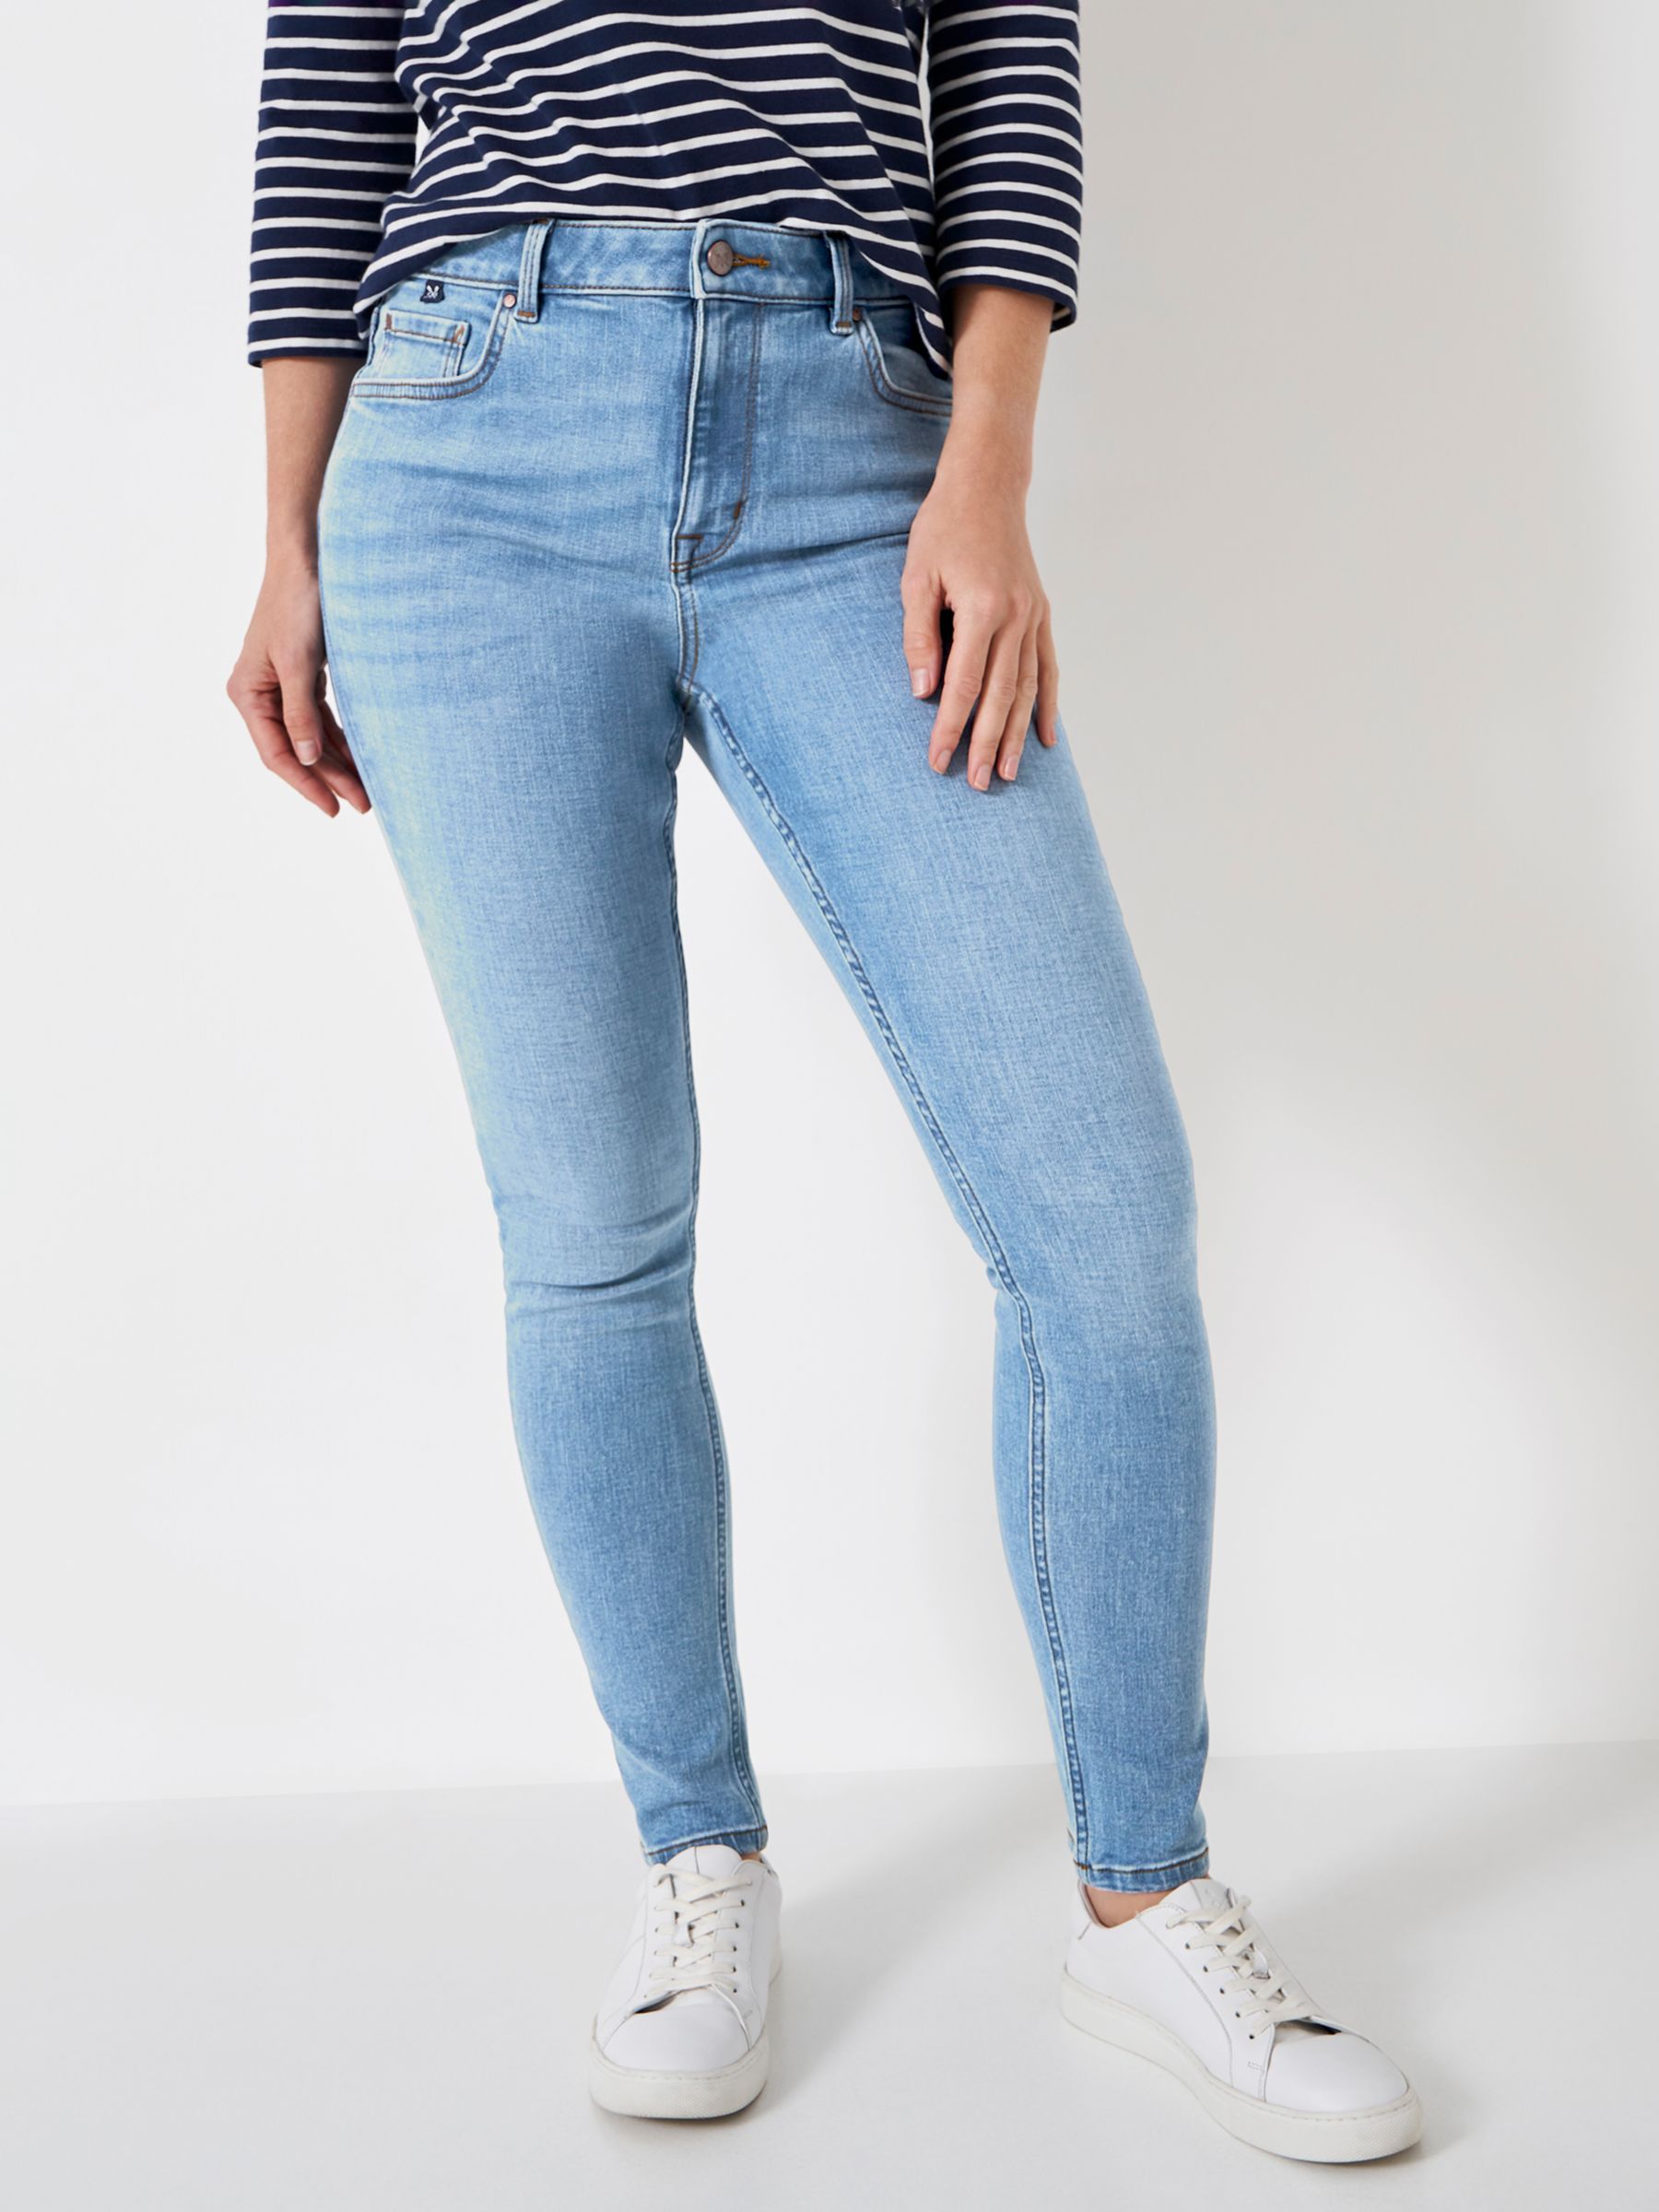 цена Узкие джинсы Crew Clothing, легкая стирка